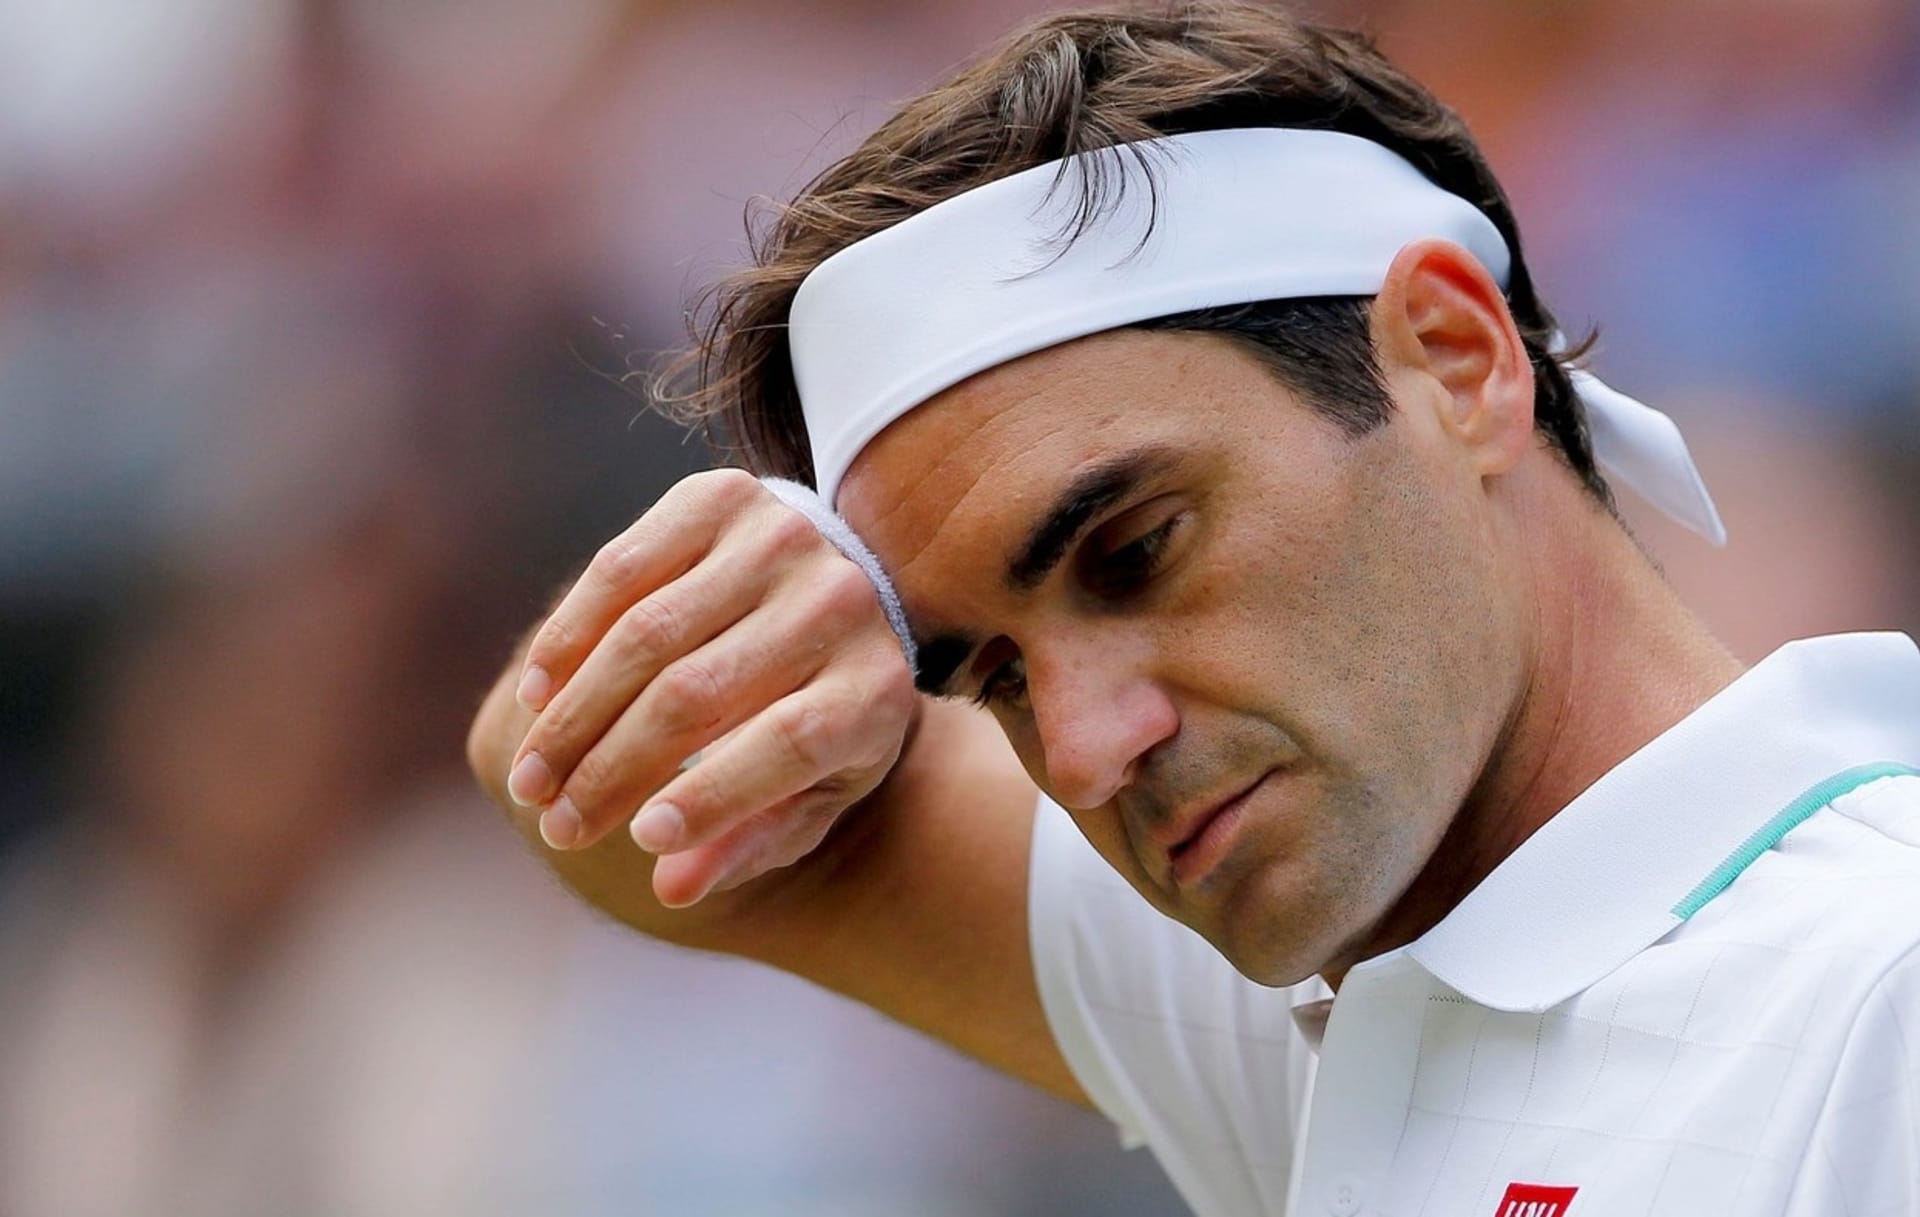 Roger Federer musí na třetí operaci kolene za krátkou dobu. A oficiální oznámení konce kariéry už je jen otázkou času.